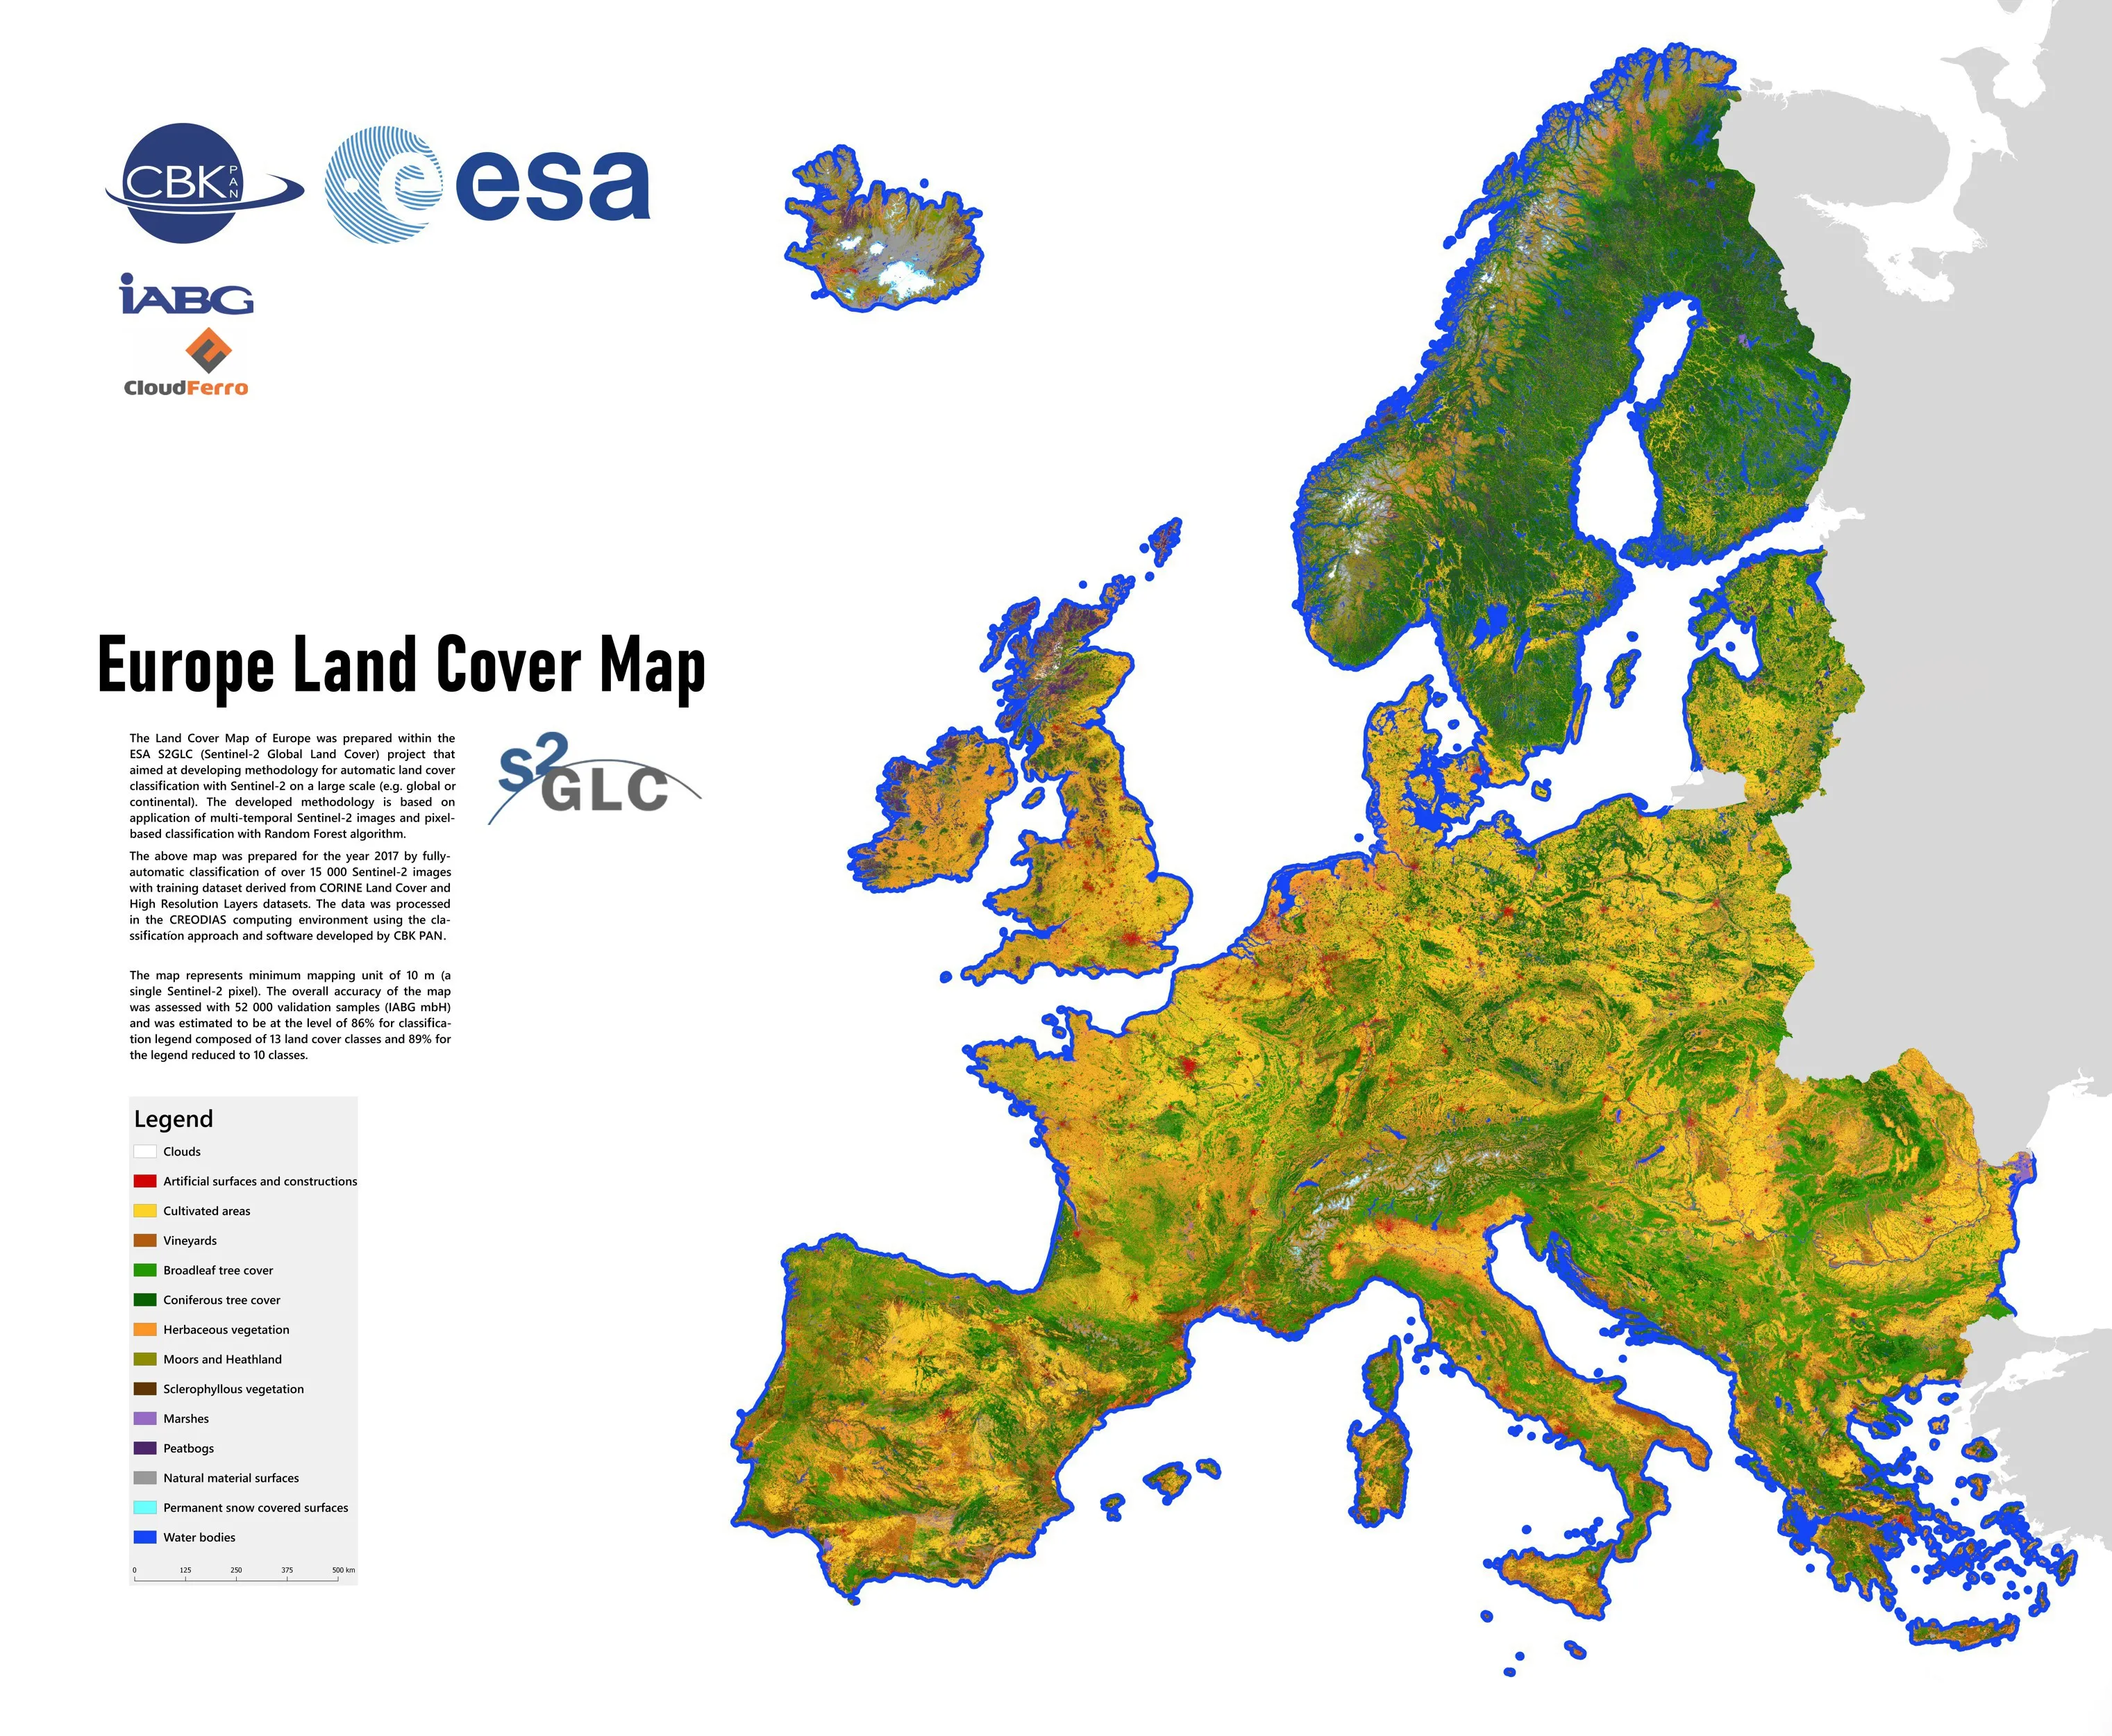 Mapa pokrycia terenu w Europie opracowana w ramach projektu S2GLC. Źródło: CBK PAN